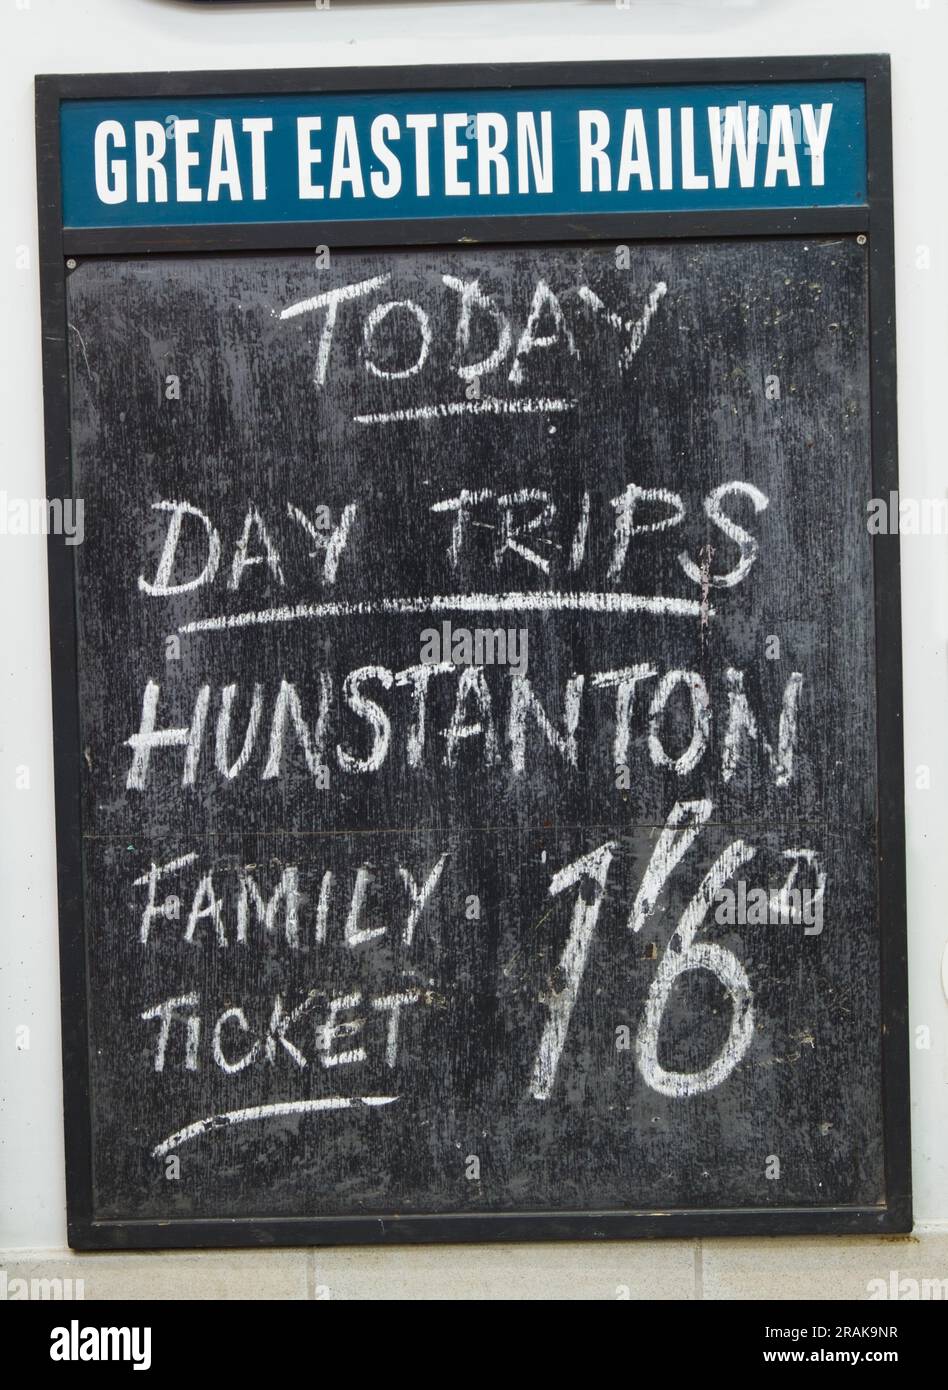 Publicité Chalk Board pour le Great Eastern Railway promotion des voyages d'une journée Family Ticket à Hunstanton, Wolferton Station, Angleterre Royaume-Uni Banque D'Images